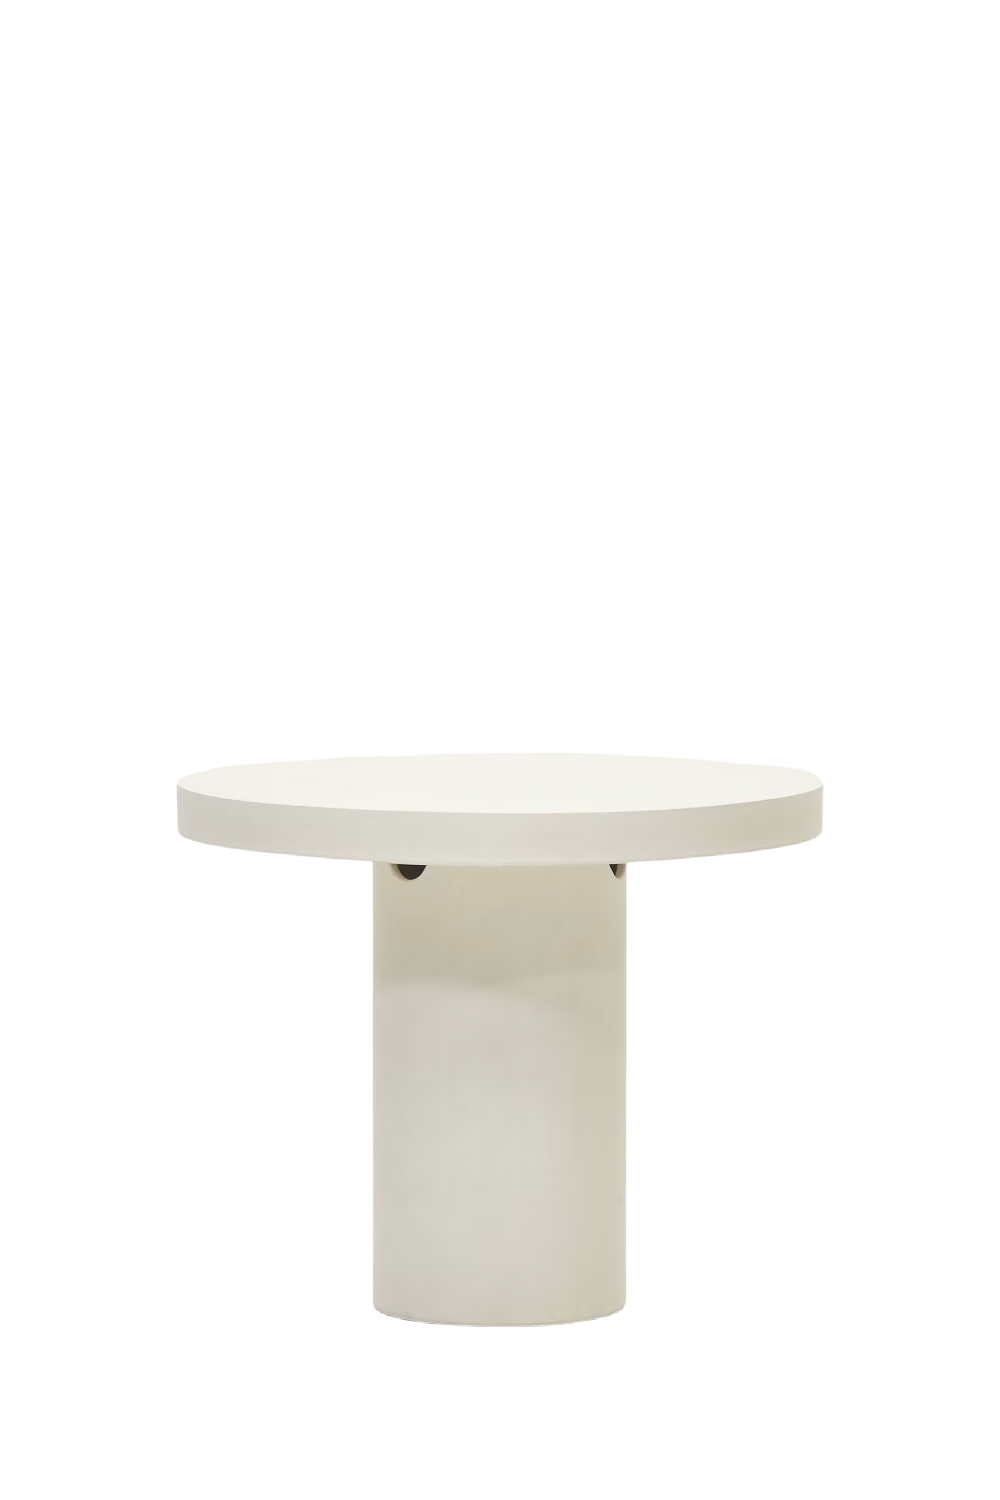 White Cement Round Table | La Forma Aiguablava | Oroa.com